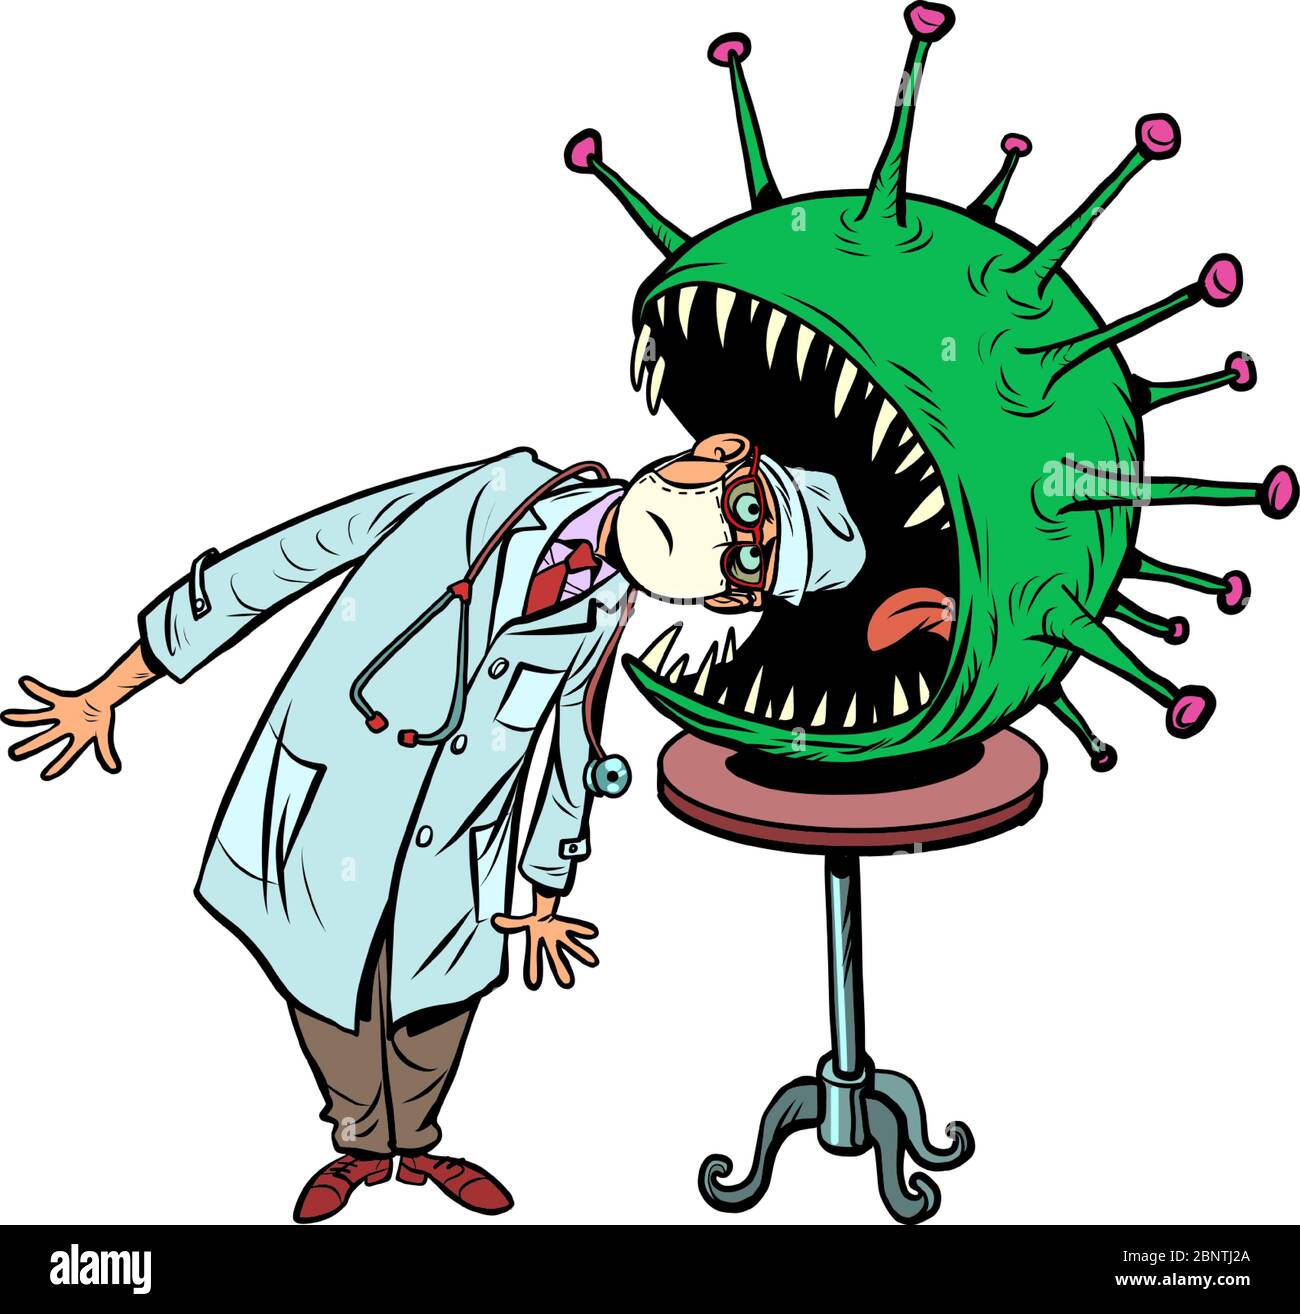 Le médecin risque sa vie, l'infection avec le concept de coronavirus. Tour de cirque dangereux Illustration de Vecteur